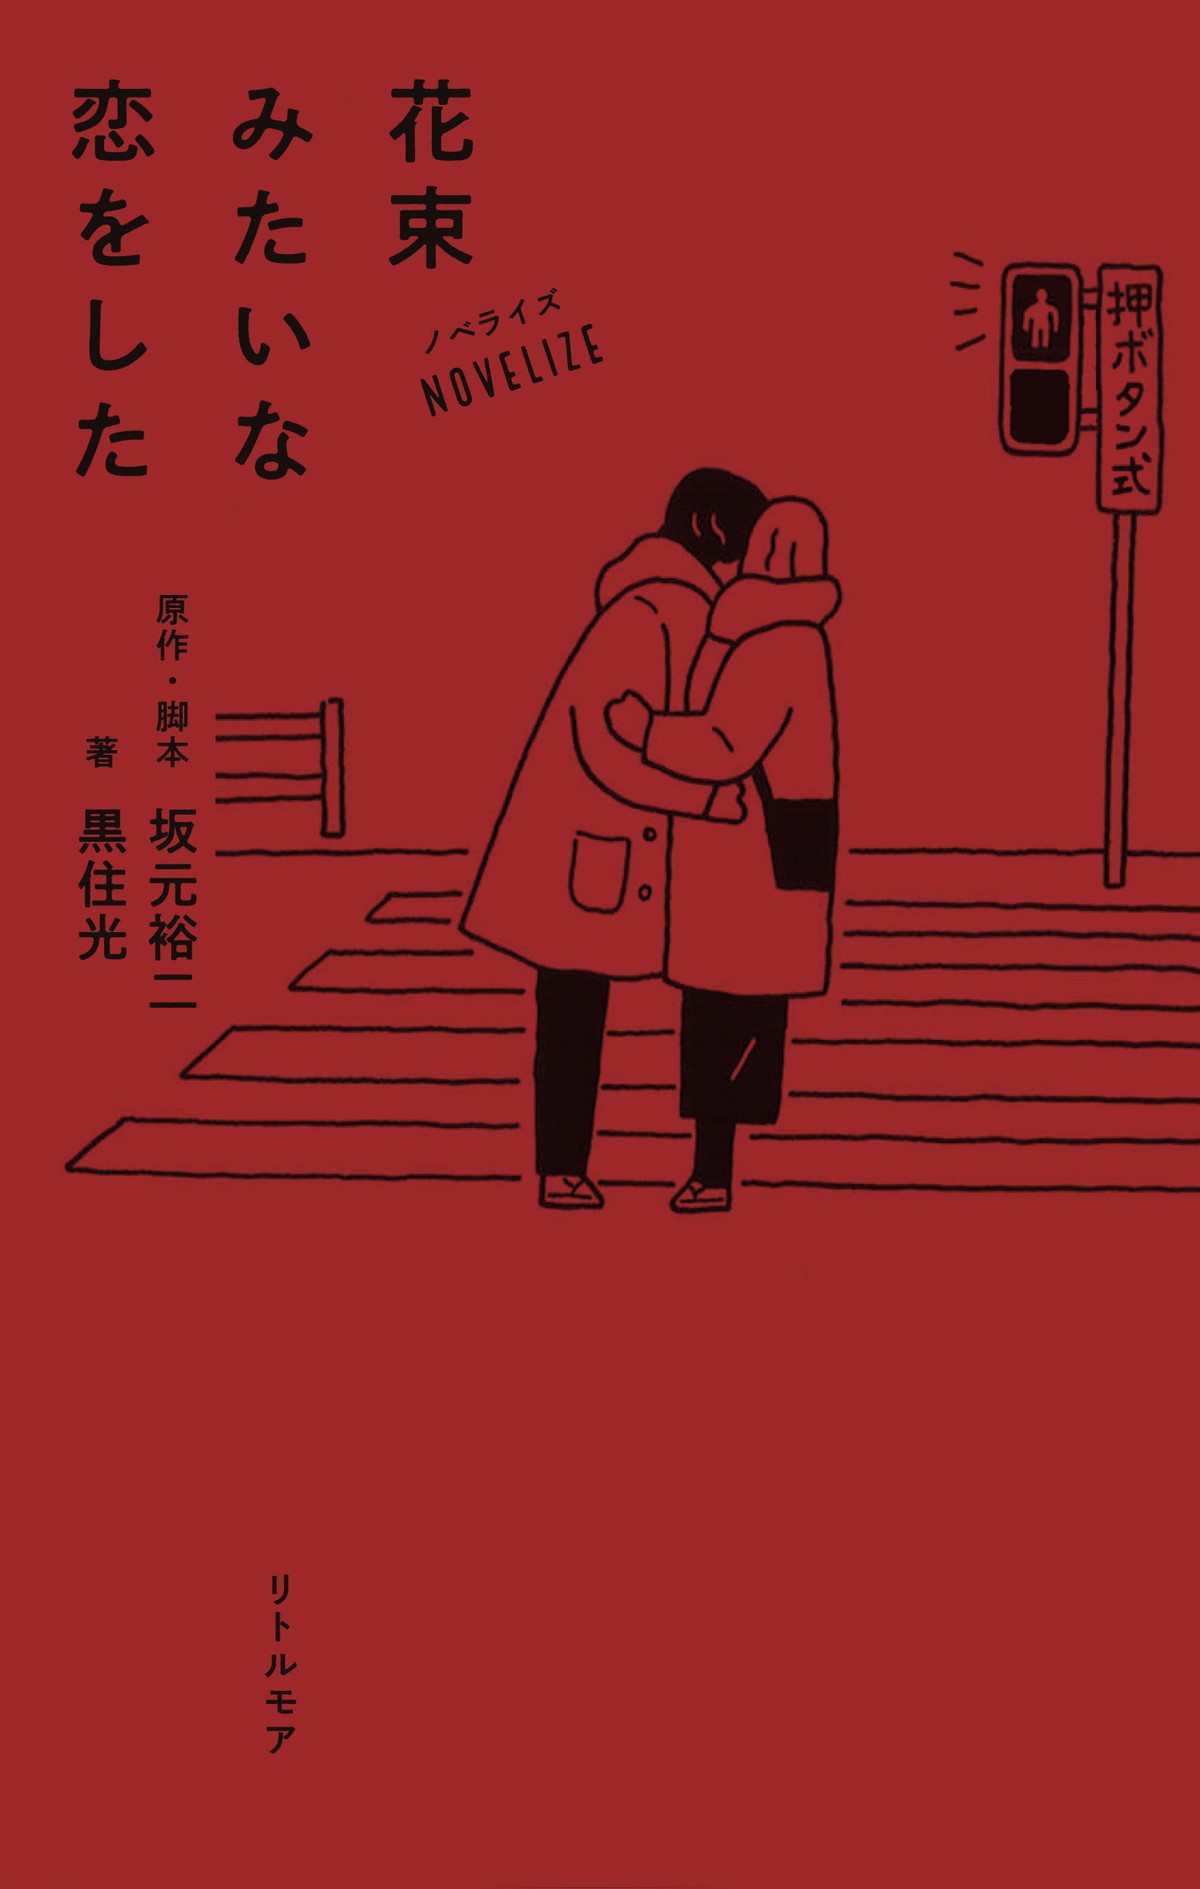 菅田将暉×有村架純の自然体な2ショット 『花束みたいな恋をした』フォトブック発売